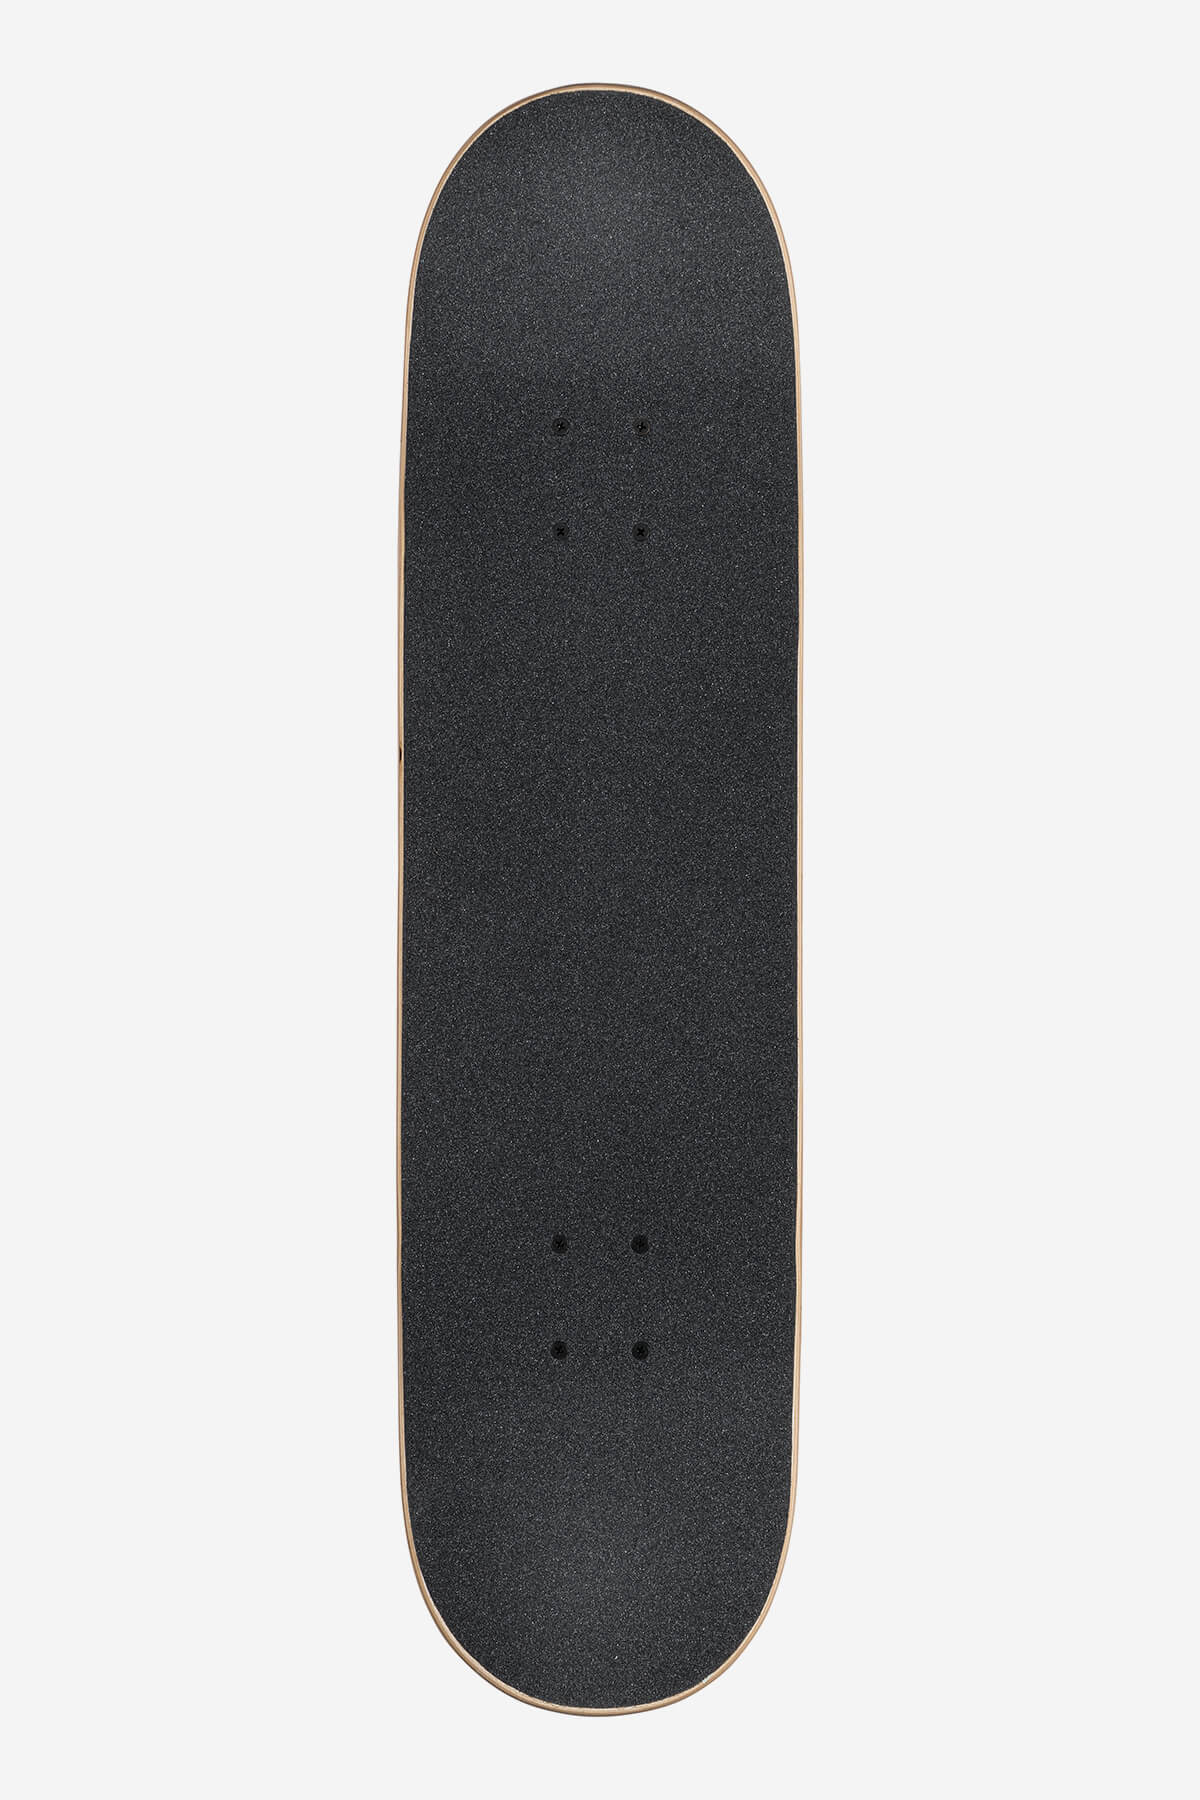 Globe - Goodstock - Neon Orange - 8,125" completo Skateboard